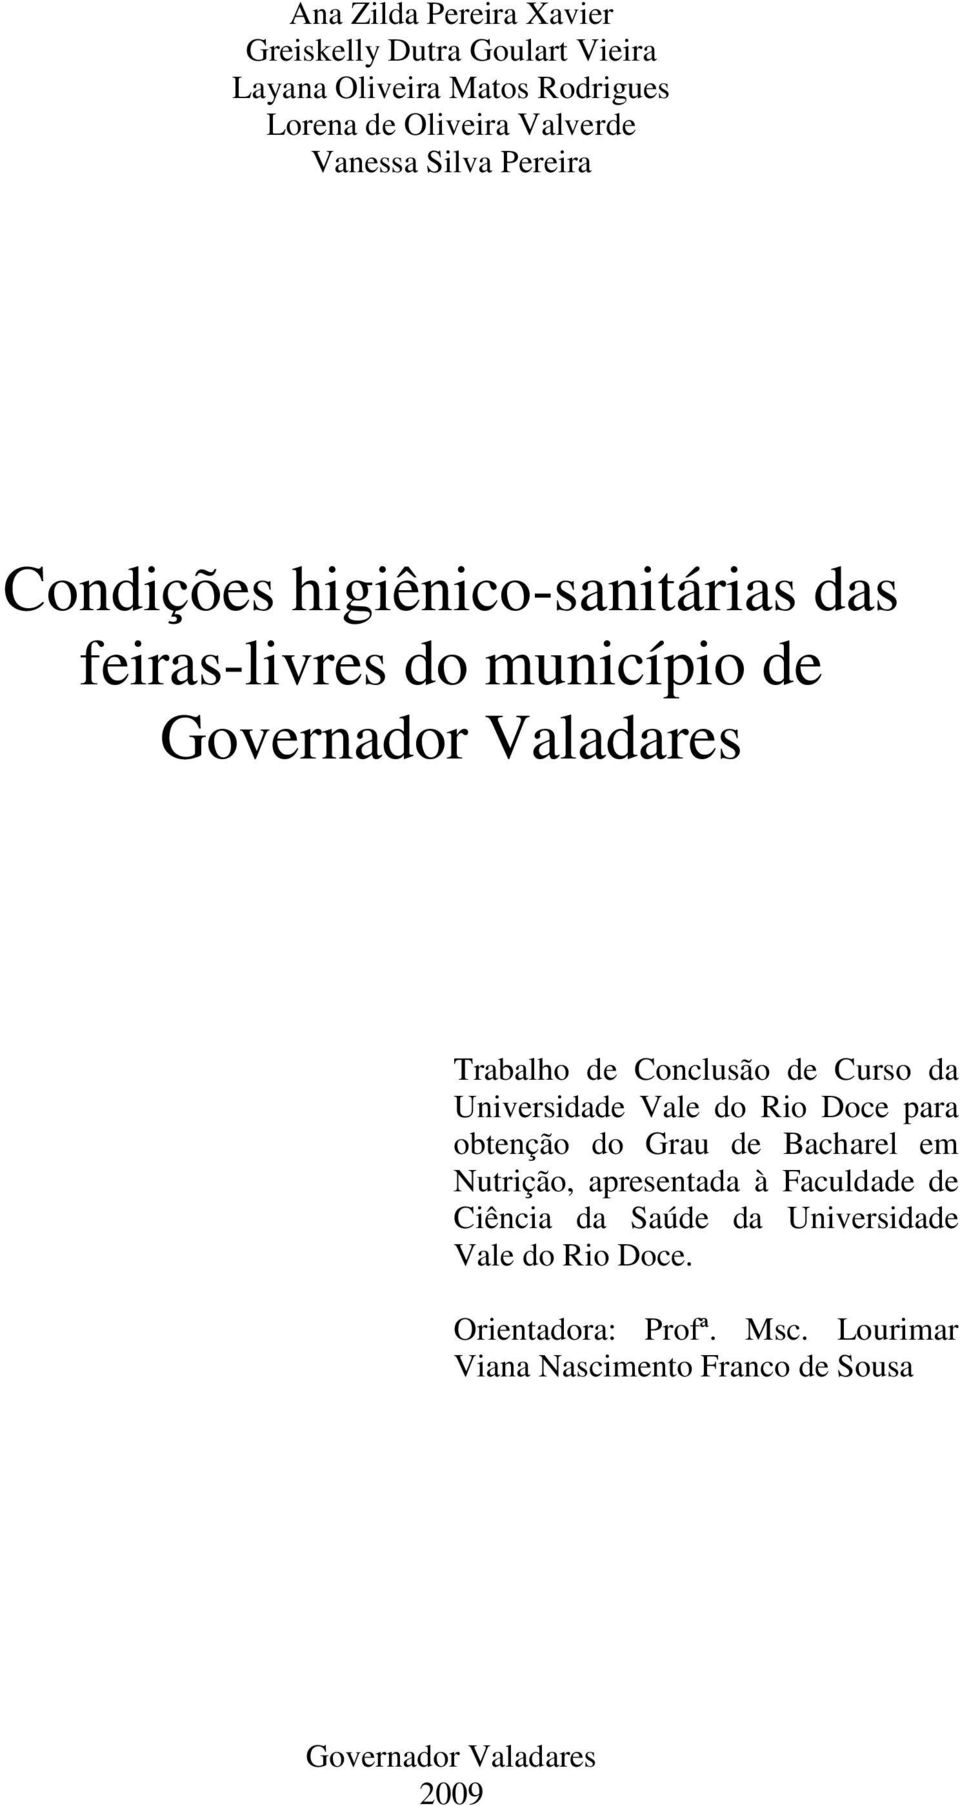 Curso da Universidade Vale do Rio Doce para obtenção do Grau de Bacharel em Nutrição, apresentada à Faculdade de Ciência da